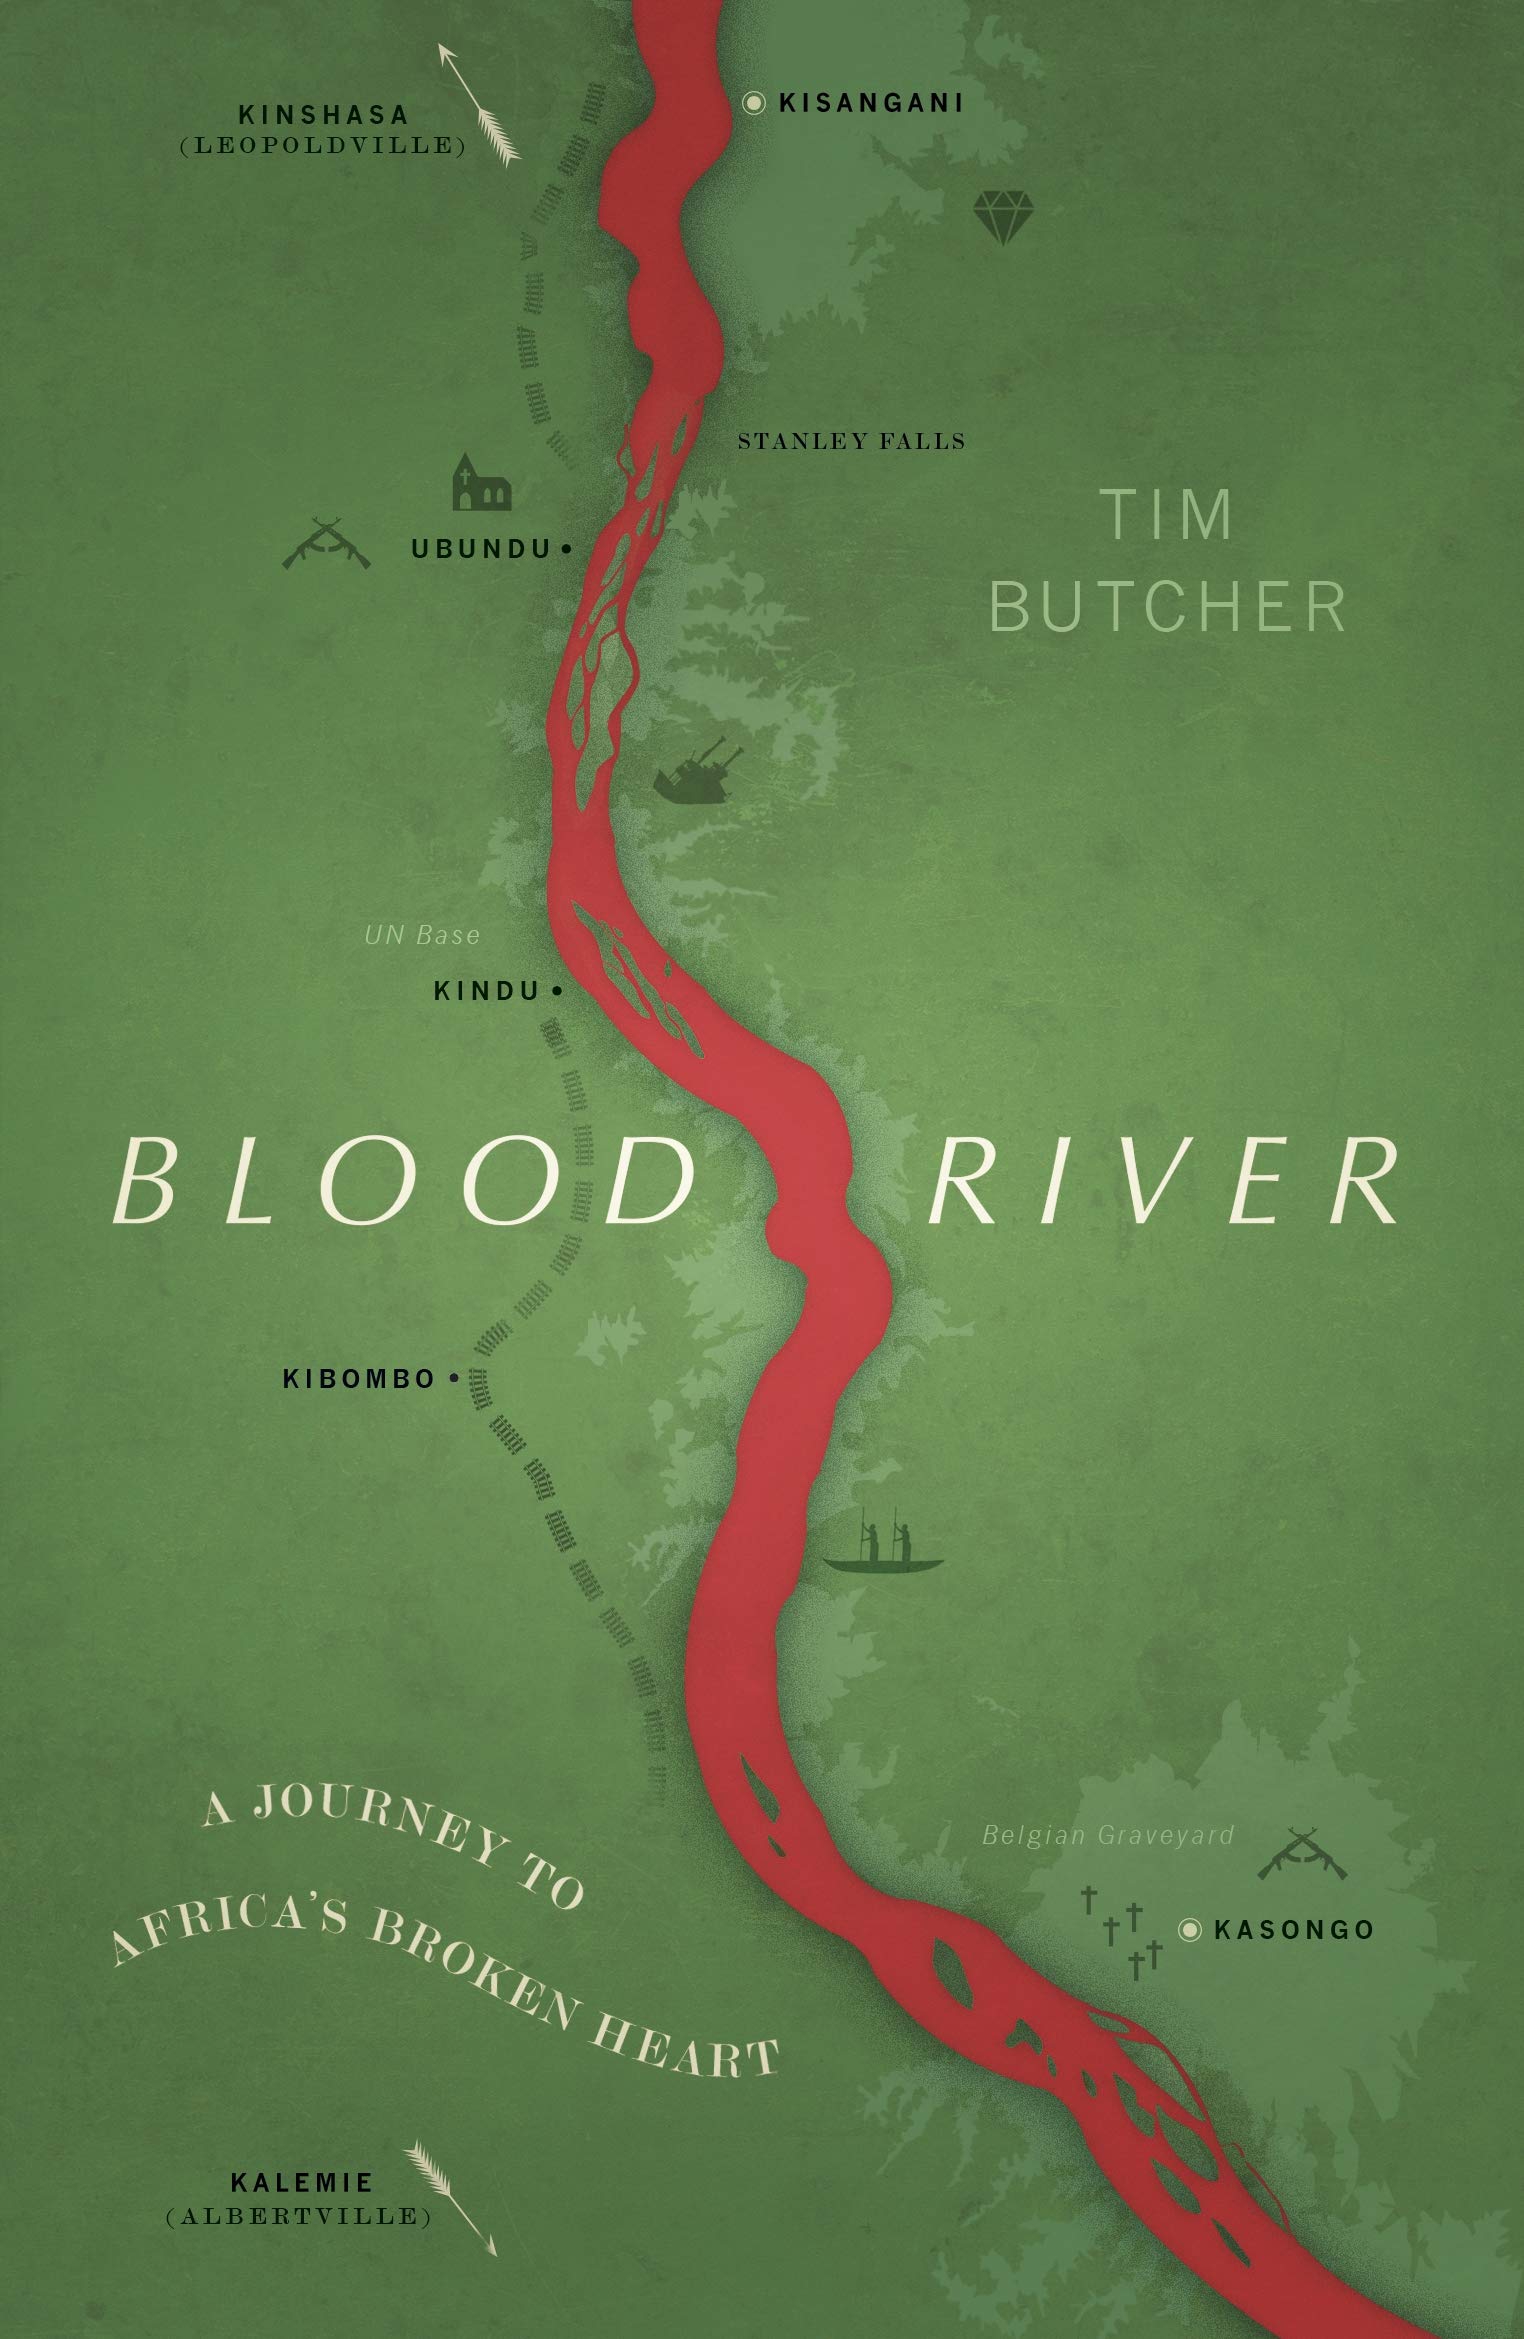 Coperta cărții: Blood River - lonnieyoungblood.com